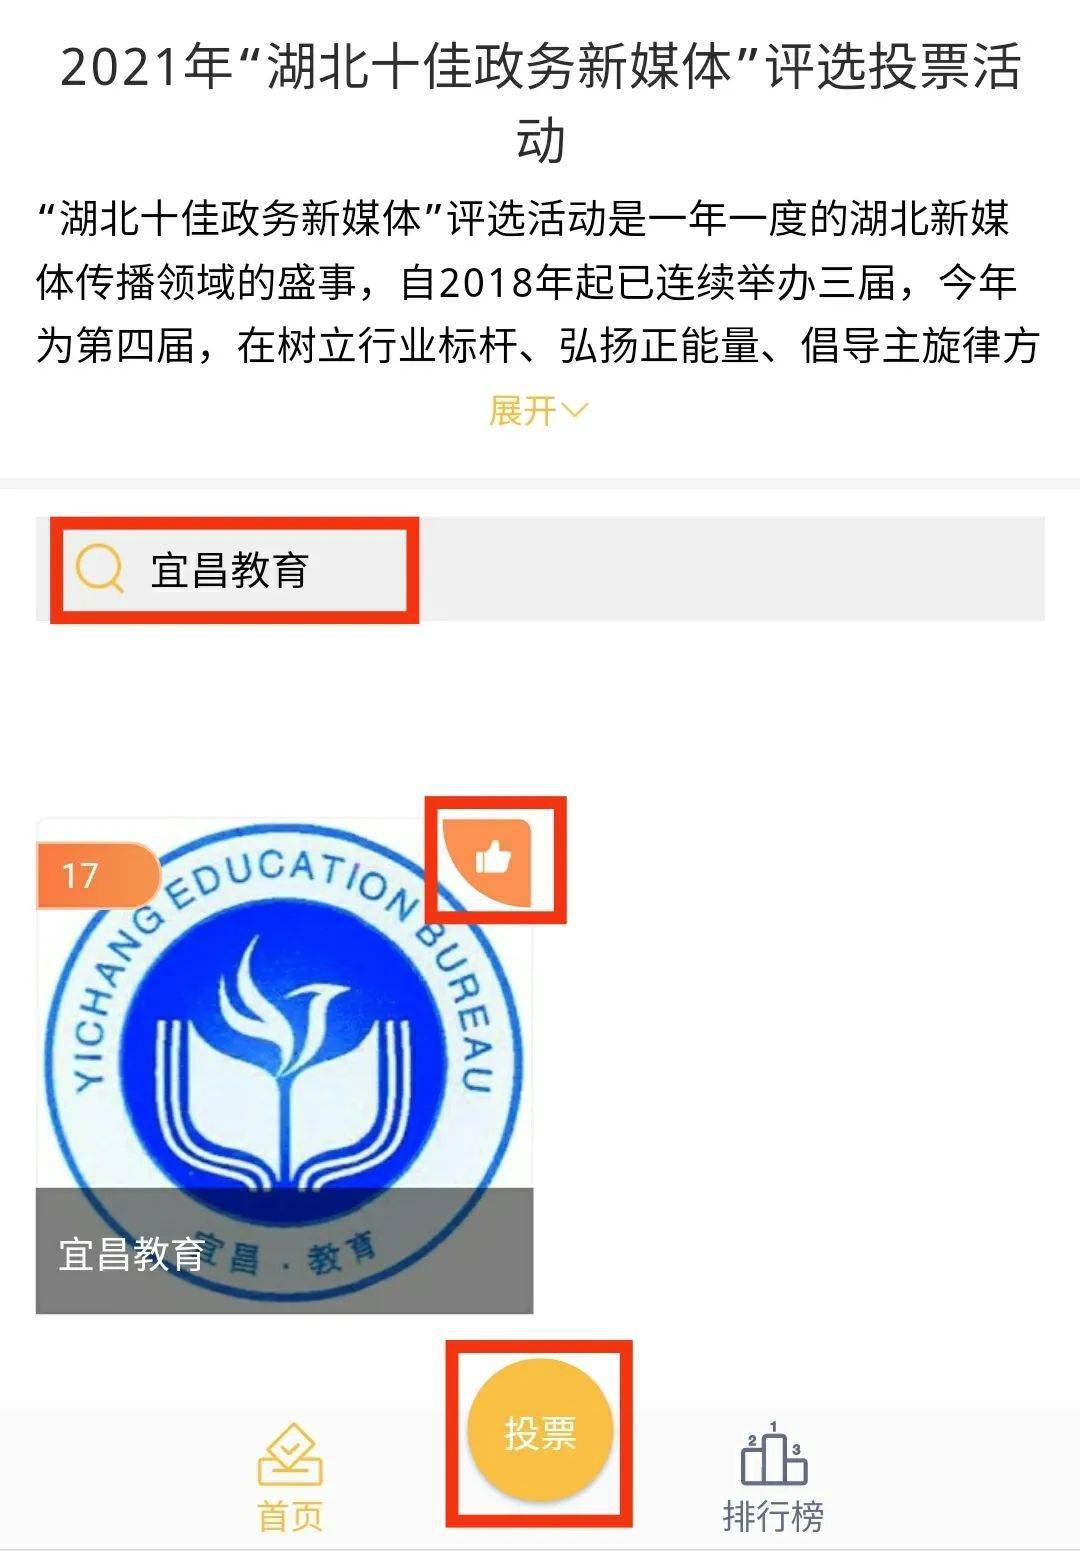 宜昌教育微信公众号超超超级感谢大家的投票~你们的支持是我们前进路